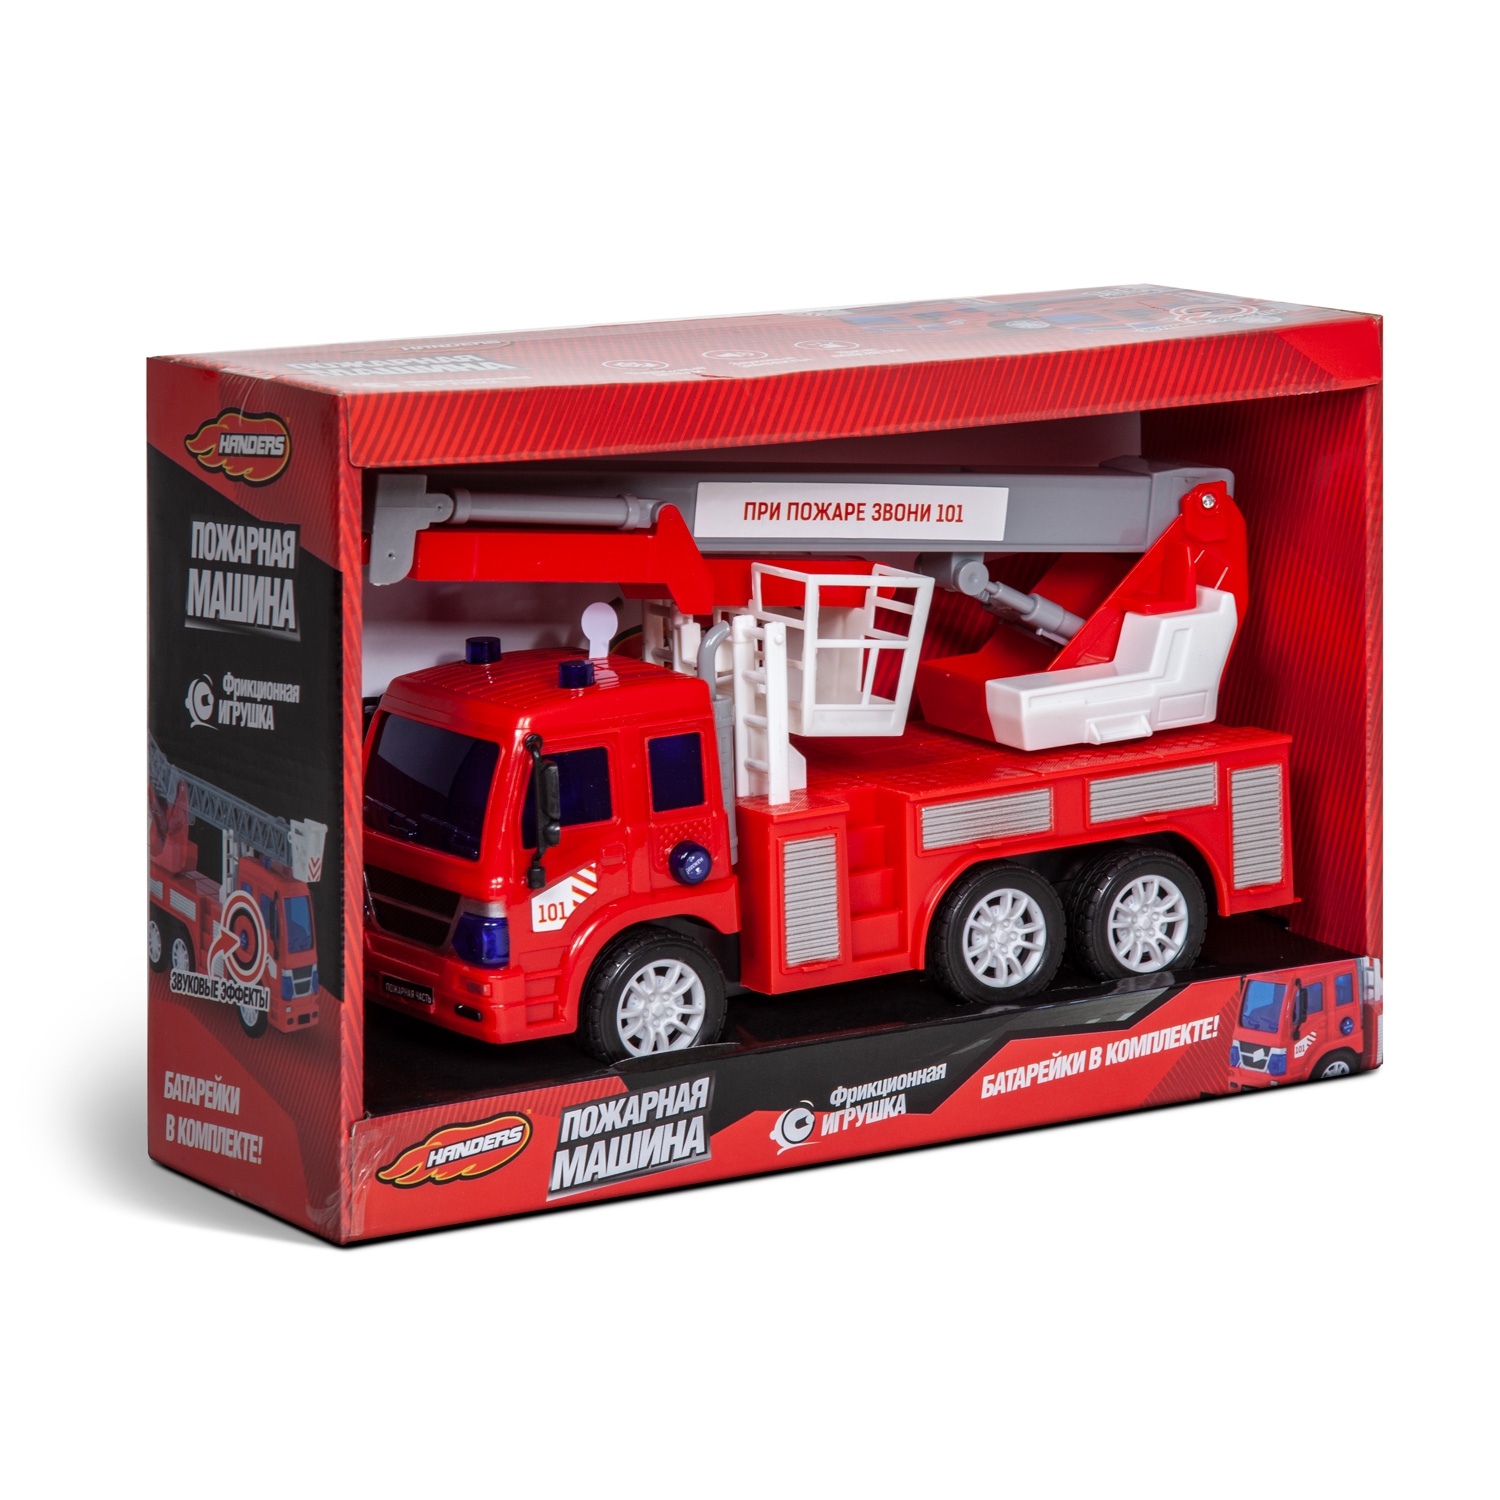 Фрикционная игрушка Handers Пожарная машина: Автовышка (26 см, свет, звук, подвиж. детали) (Вид 1)